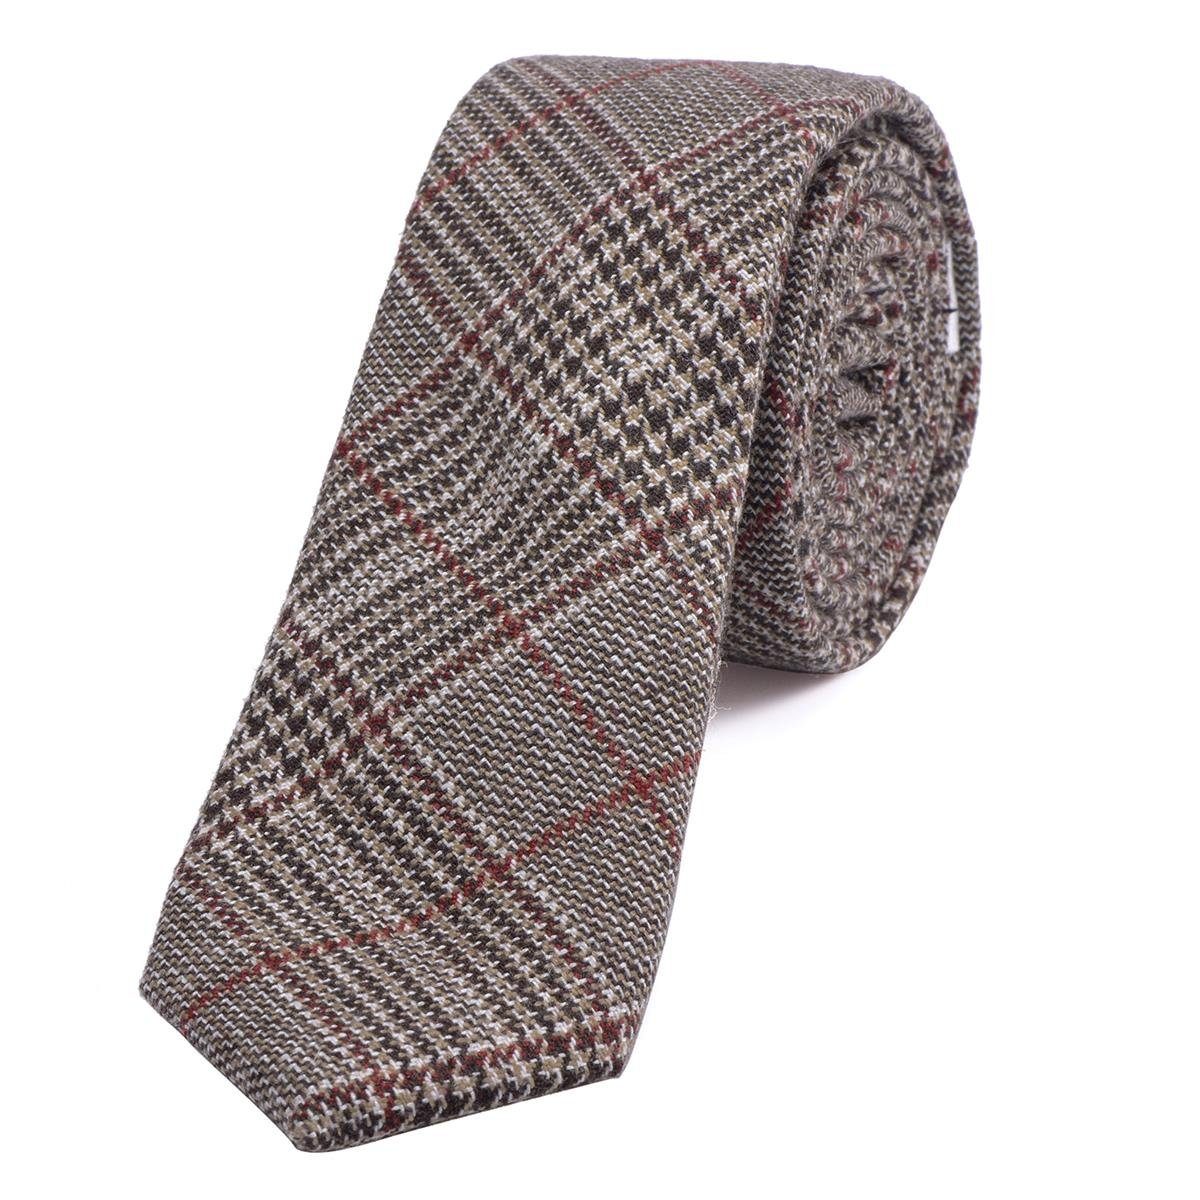 DonDon Krawatte Herren Krawatte 6 cm einfarbig kariert und gepunkt (Packung, 1-St., 1x Krawatte) Baumwolle, verschiedene Muster, für Büro oder festliche Veranstaltungen dunkelrot-schwarz-braun kariert